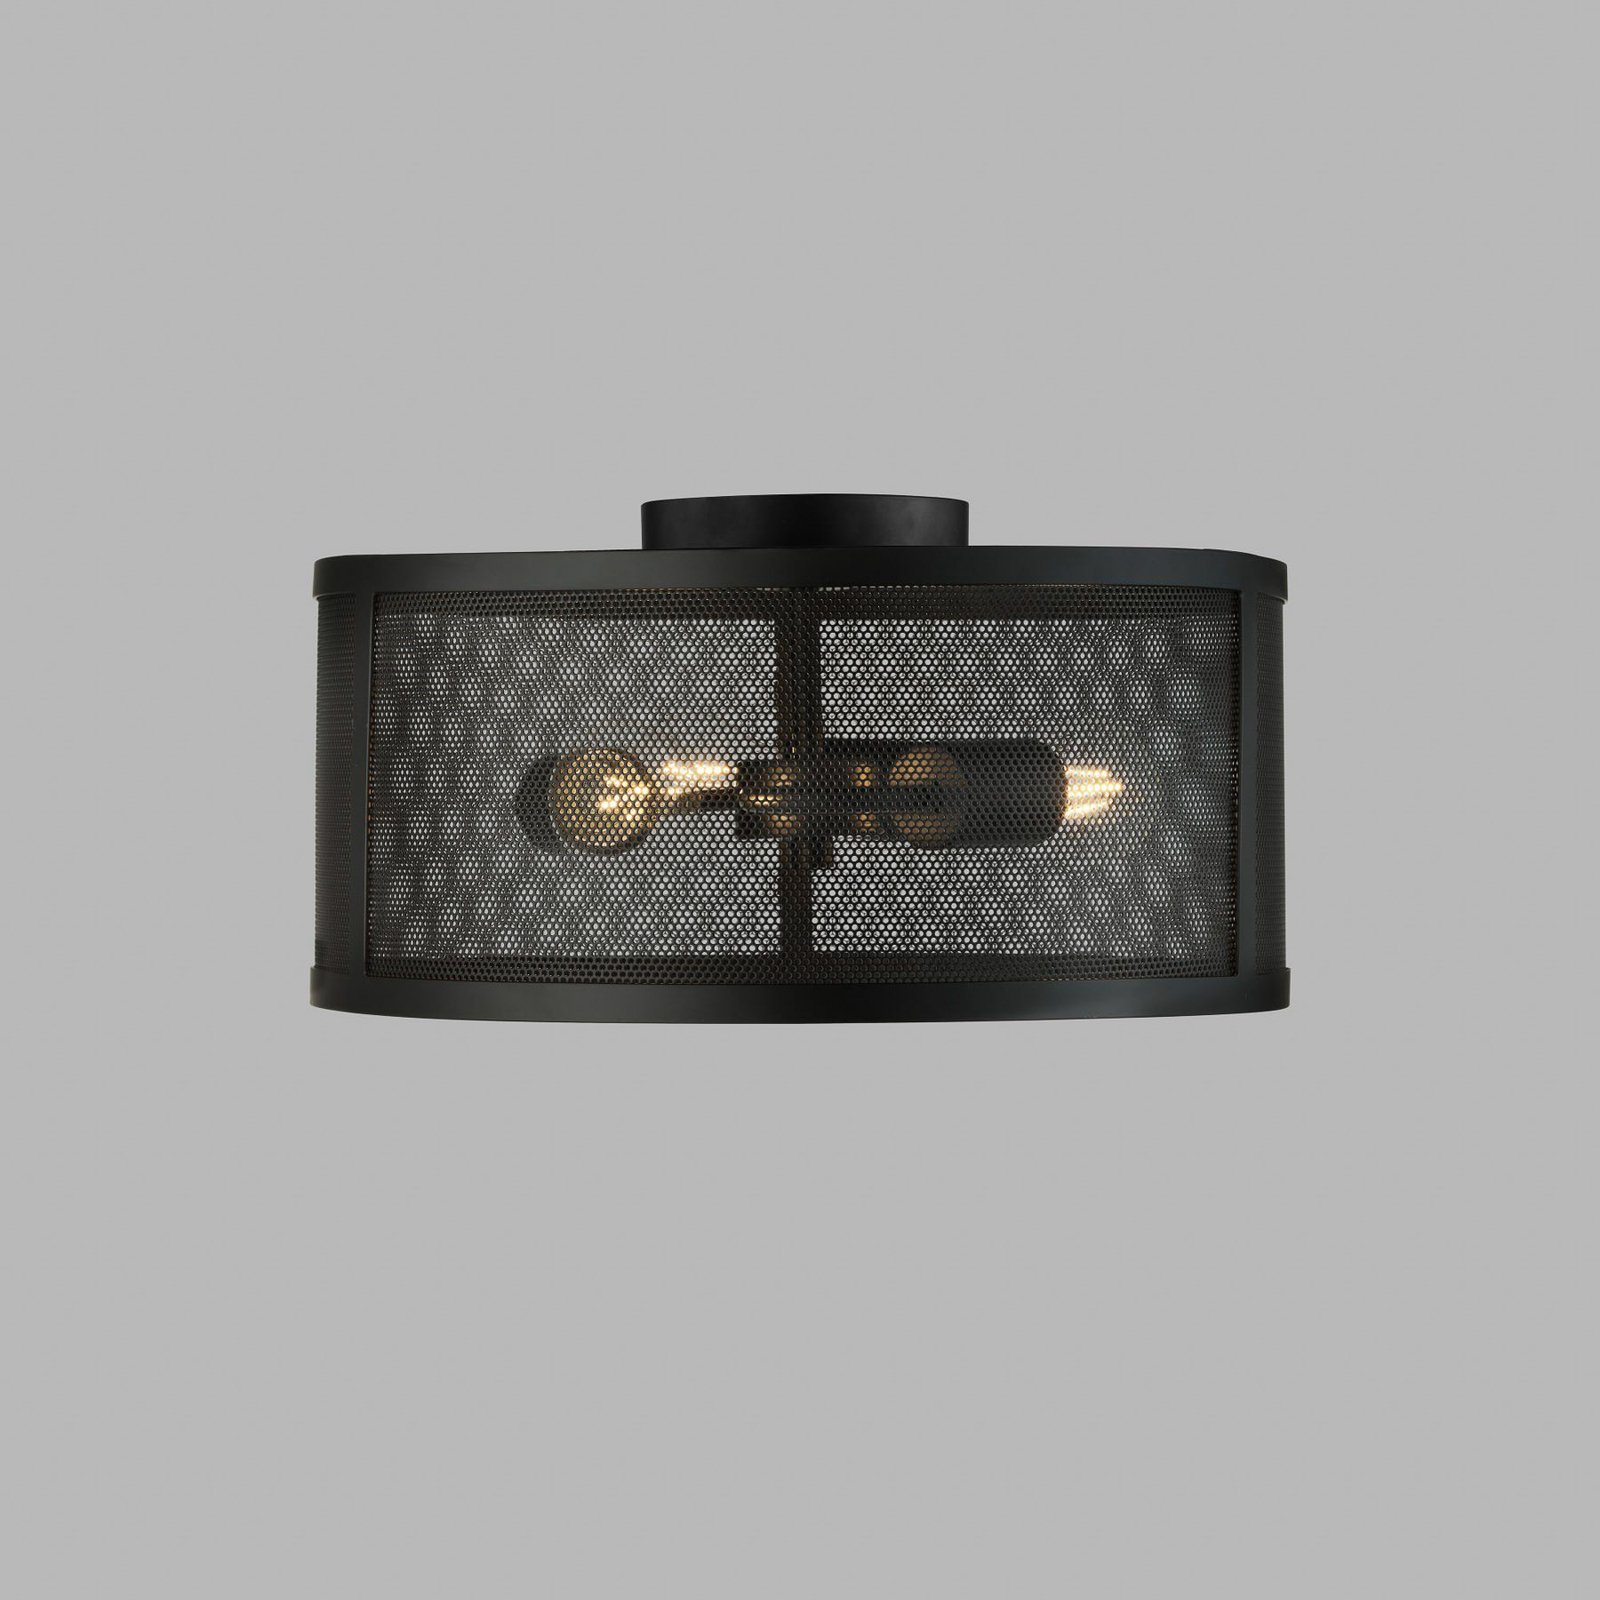 Mrežasta stropna svjetiljka izrađena od metala u crnoj boji